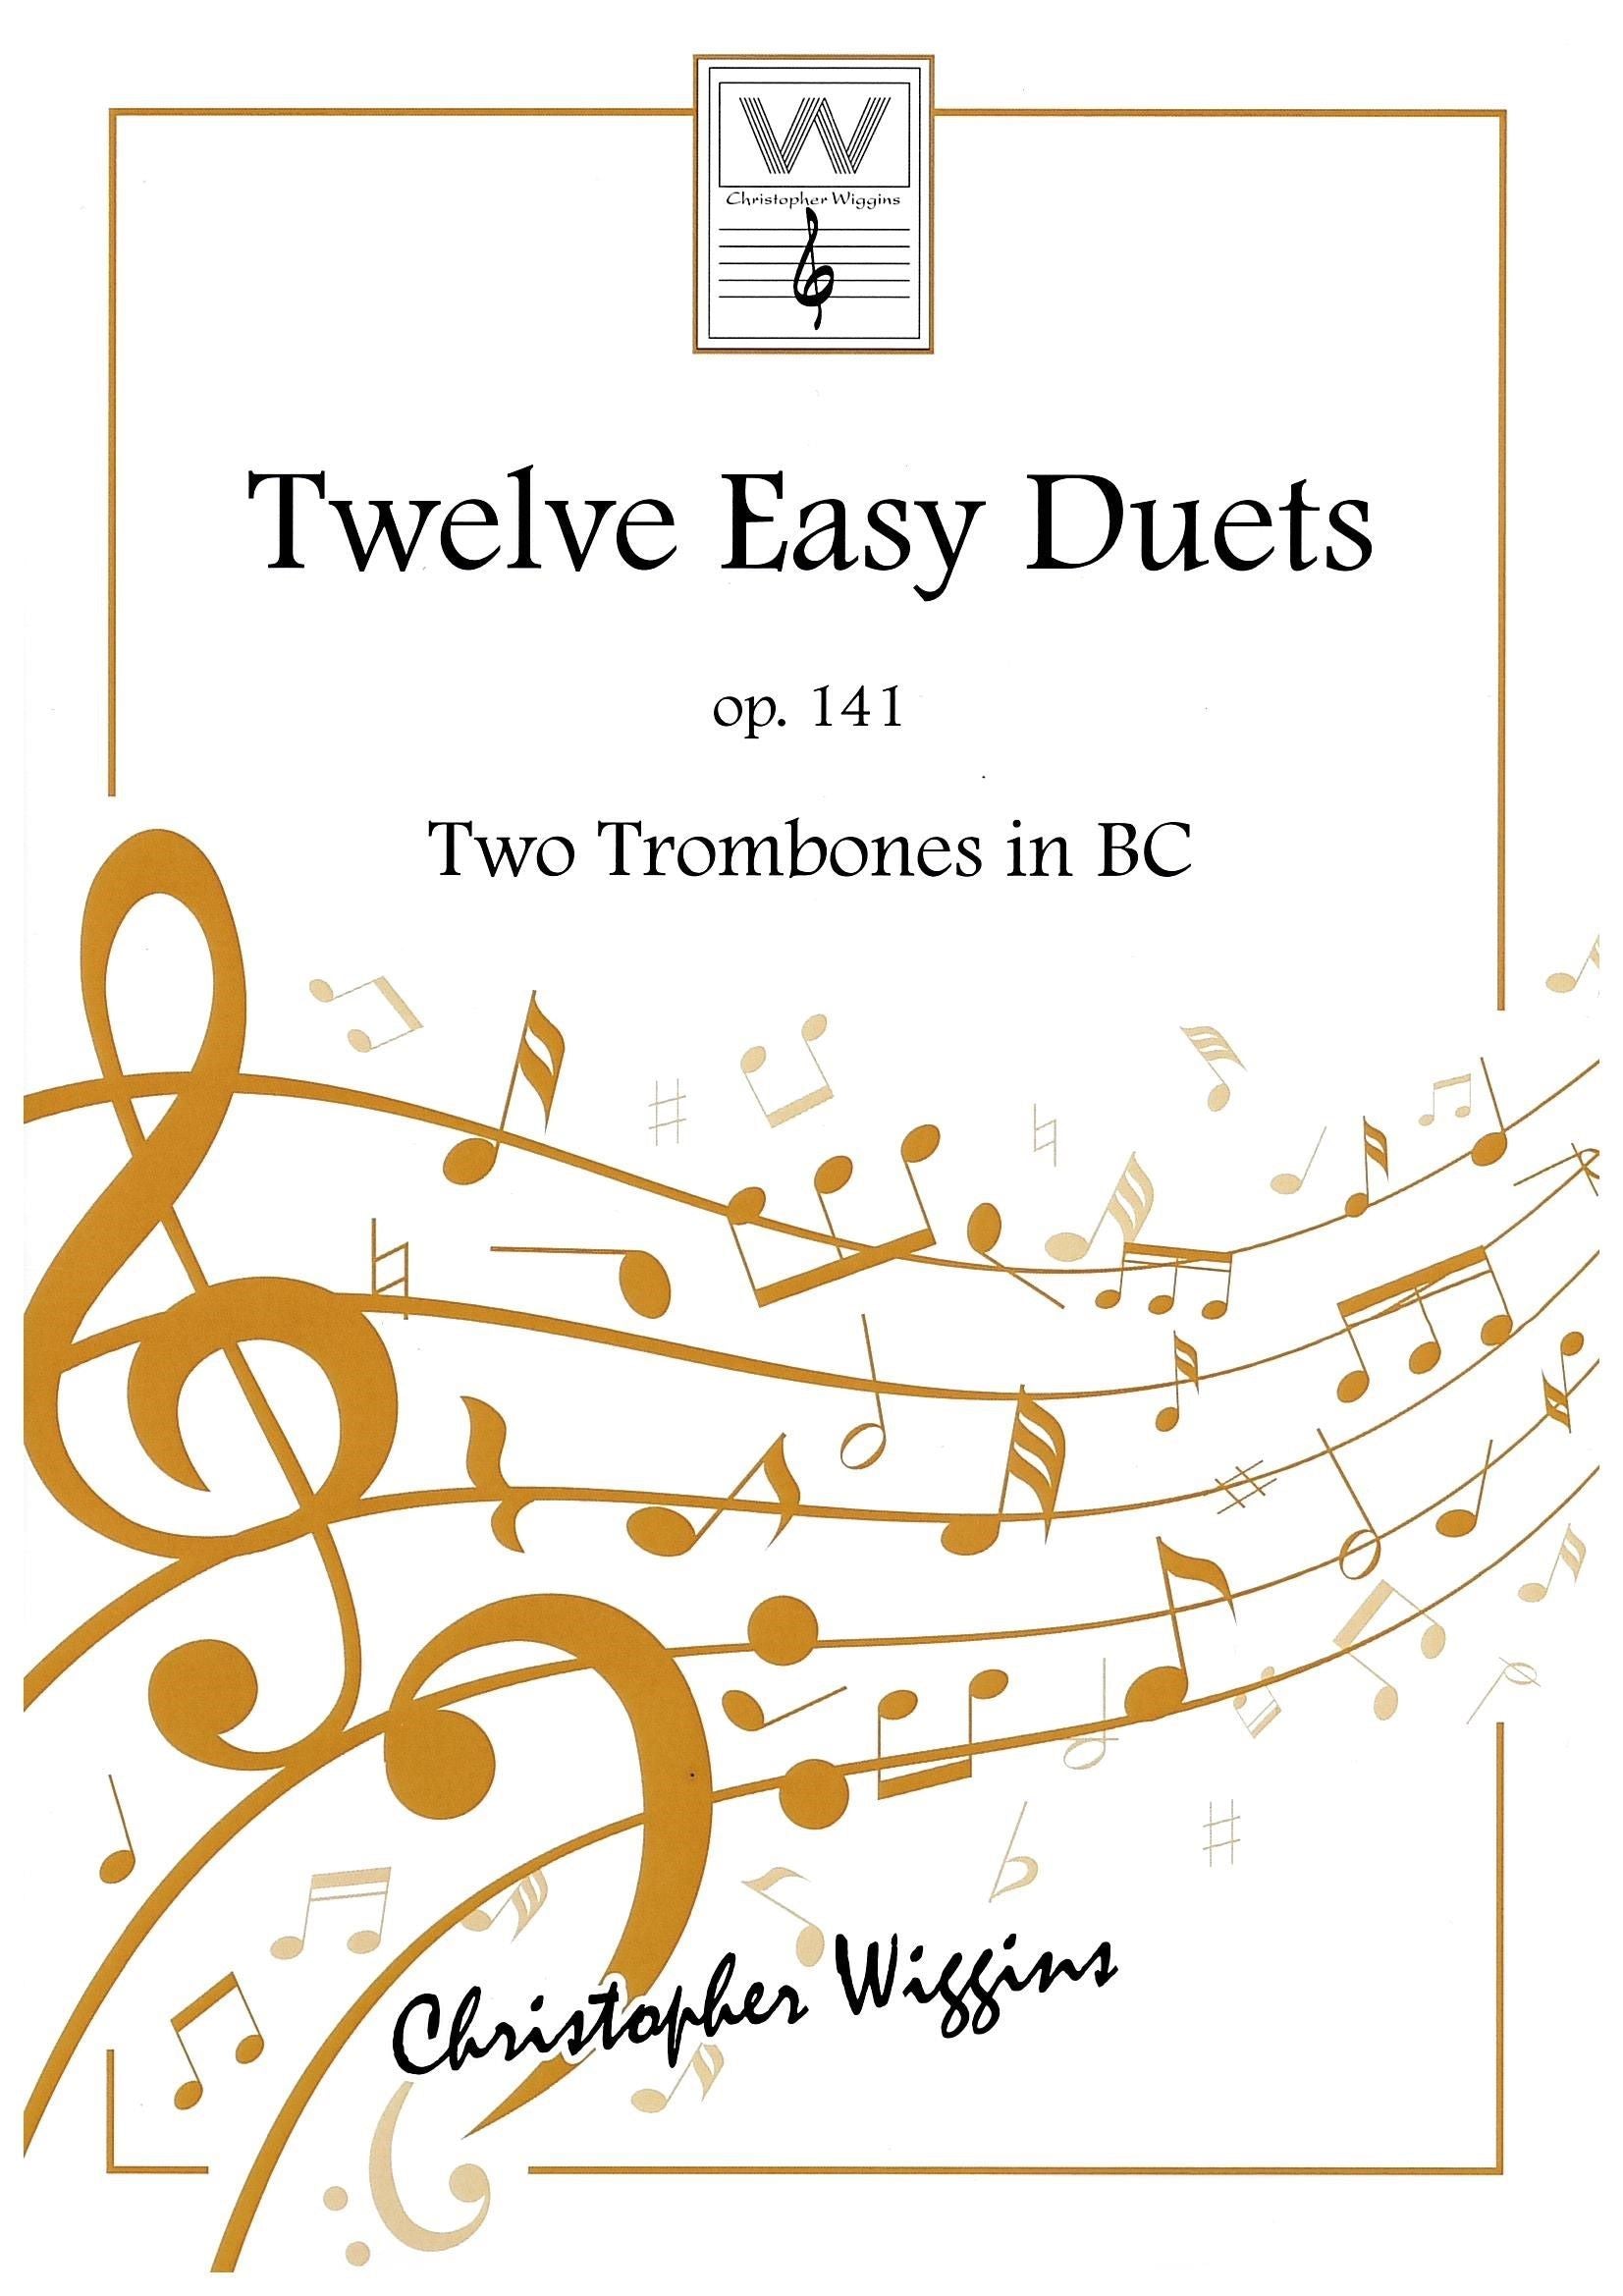 Twelve easy Duets op.141 for 2 trombones